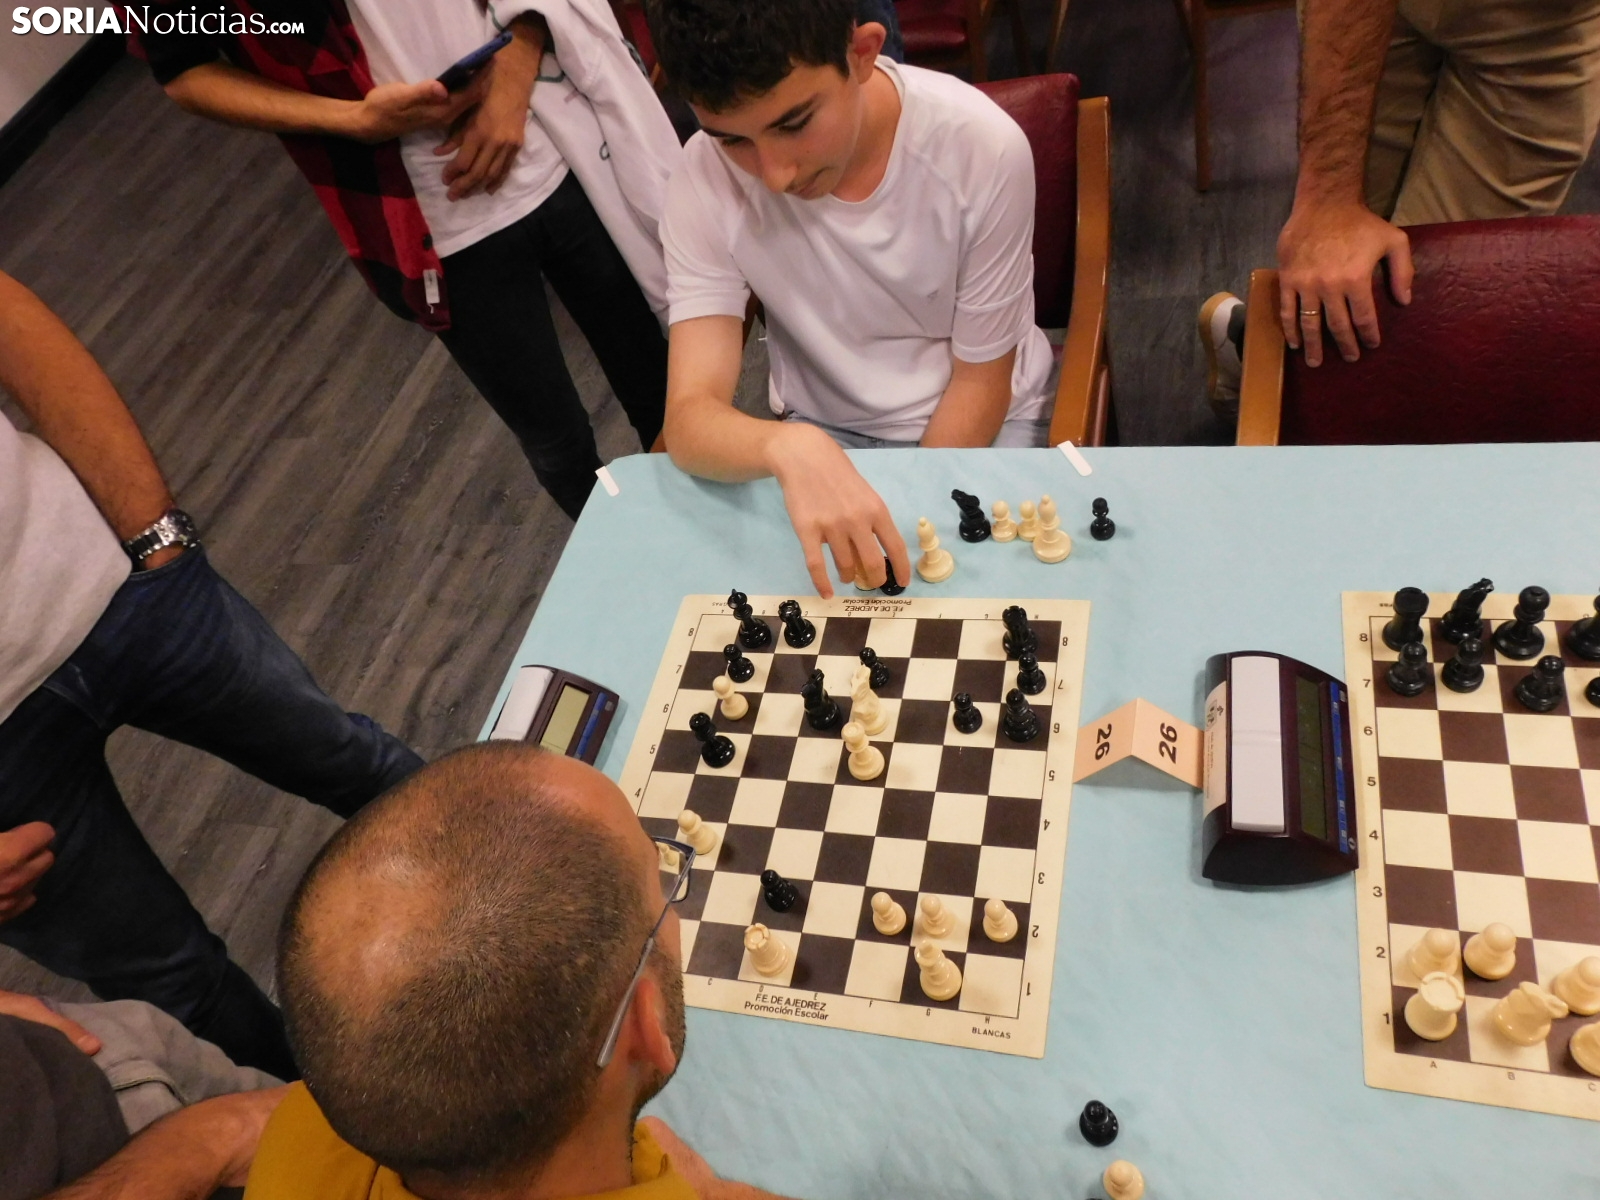 Lanzan el ajedrez de Las Ánimas - SoriaNoticias